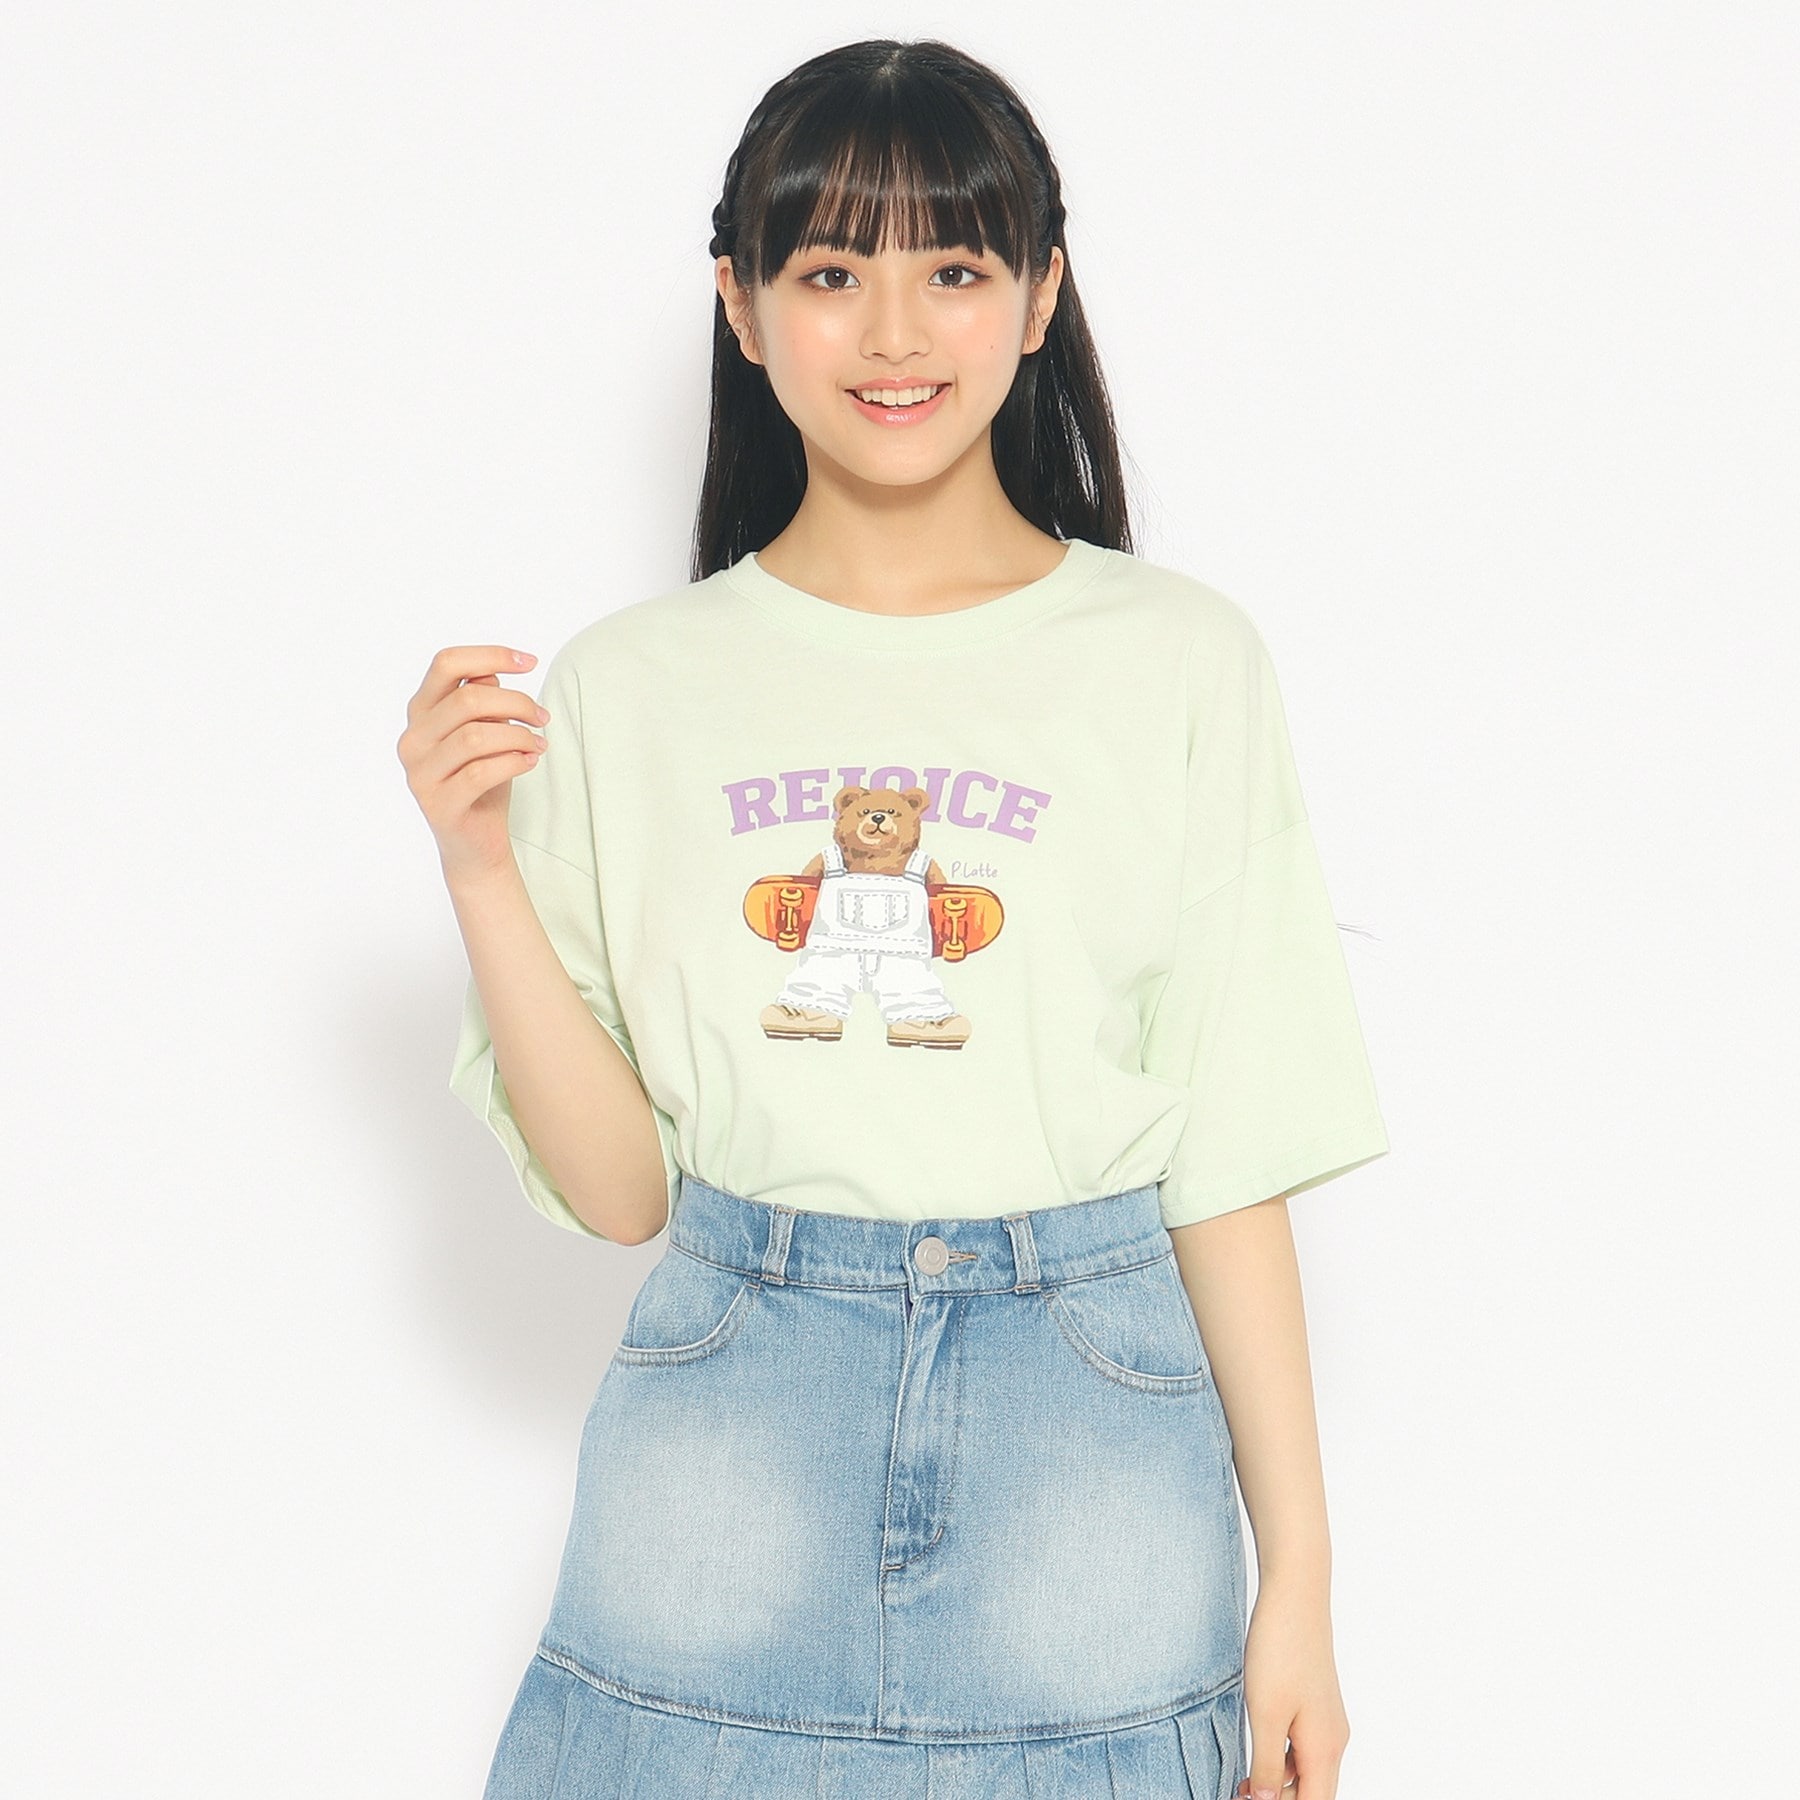 ピンク ラテ(PINK-latte)のスケボークマちゃんプリントTシャツ ミントグリーン(021)